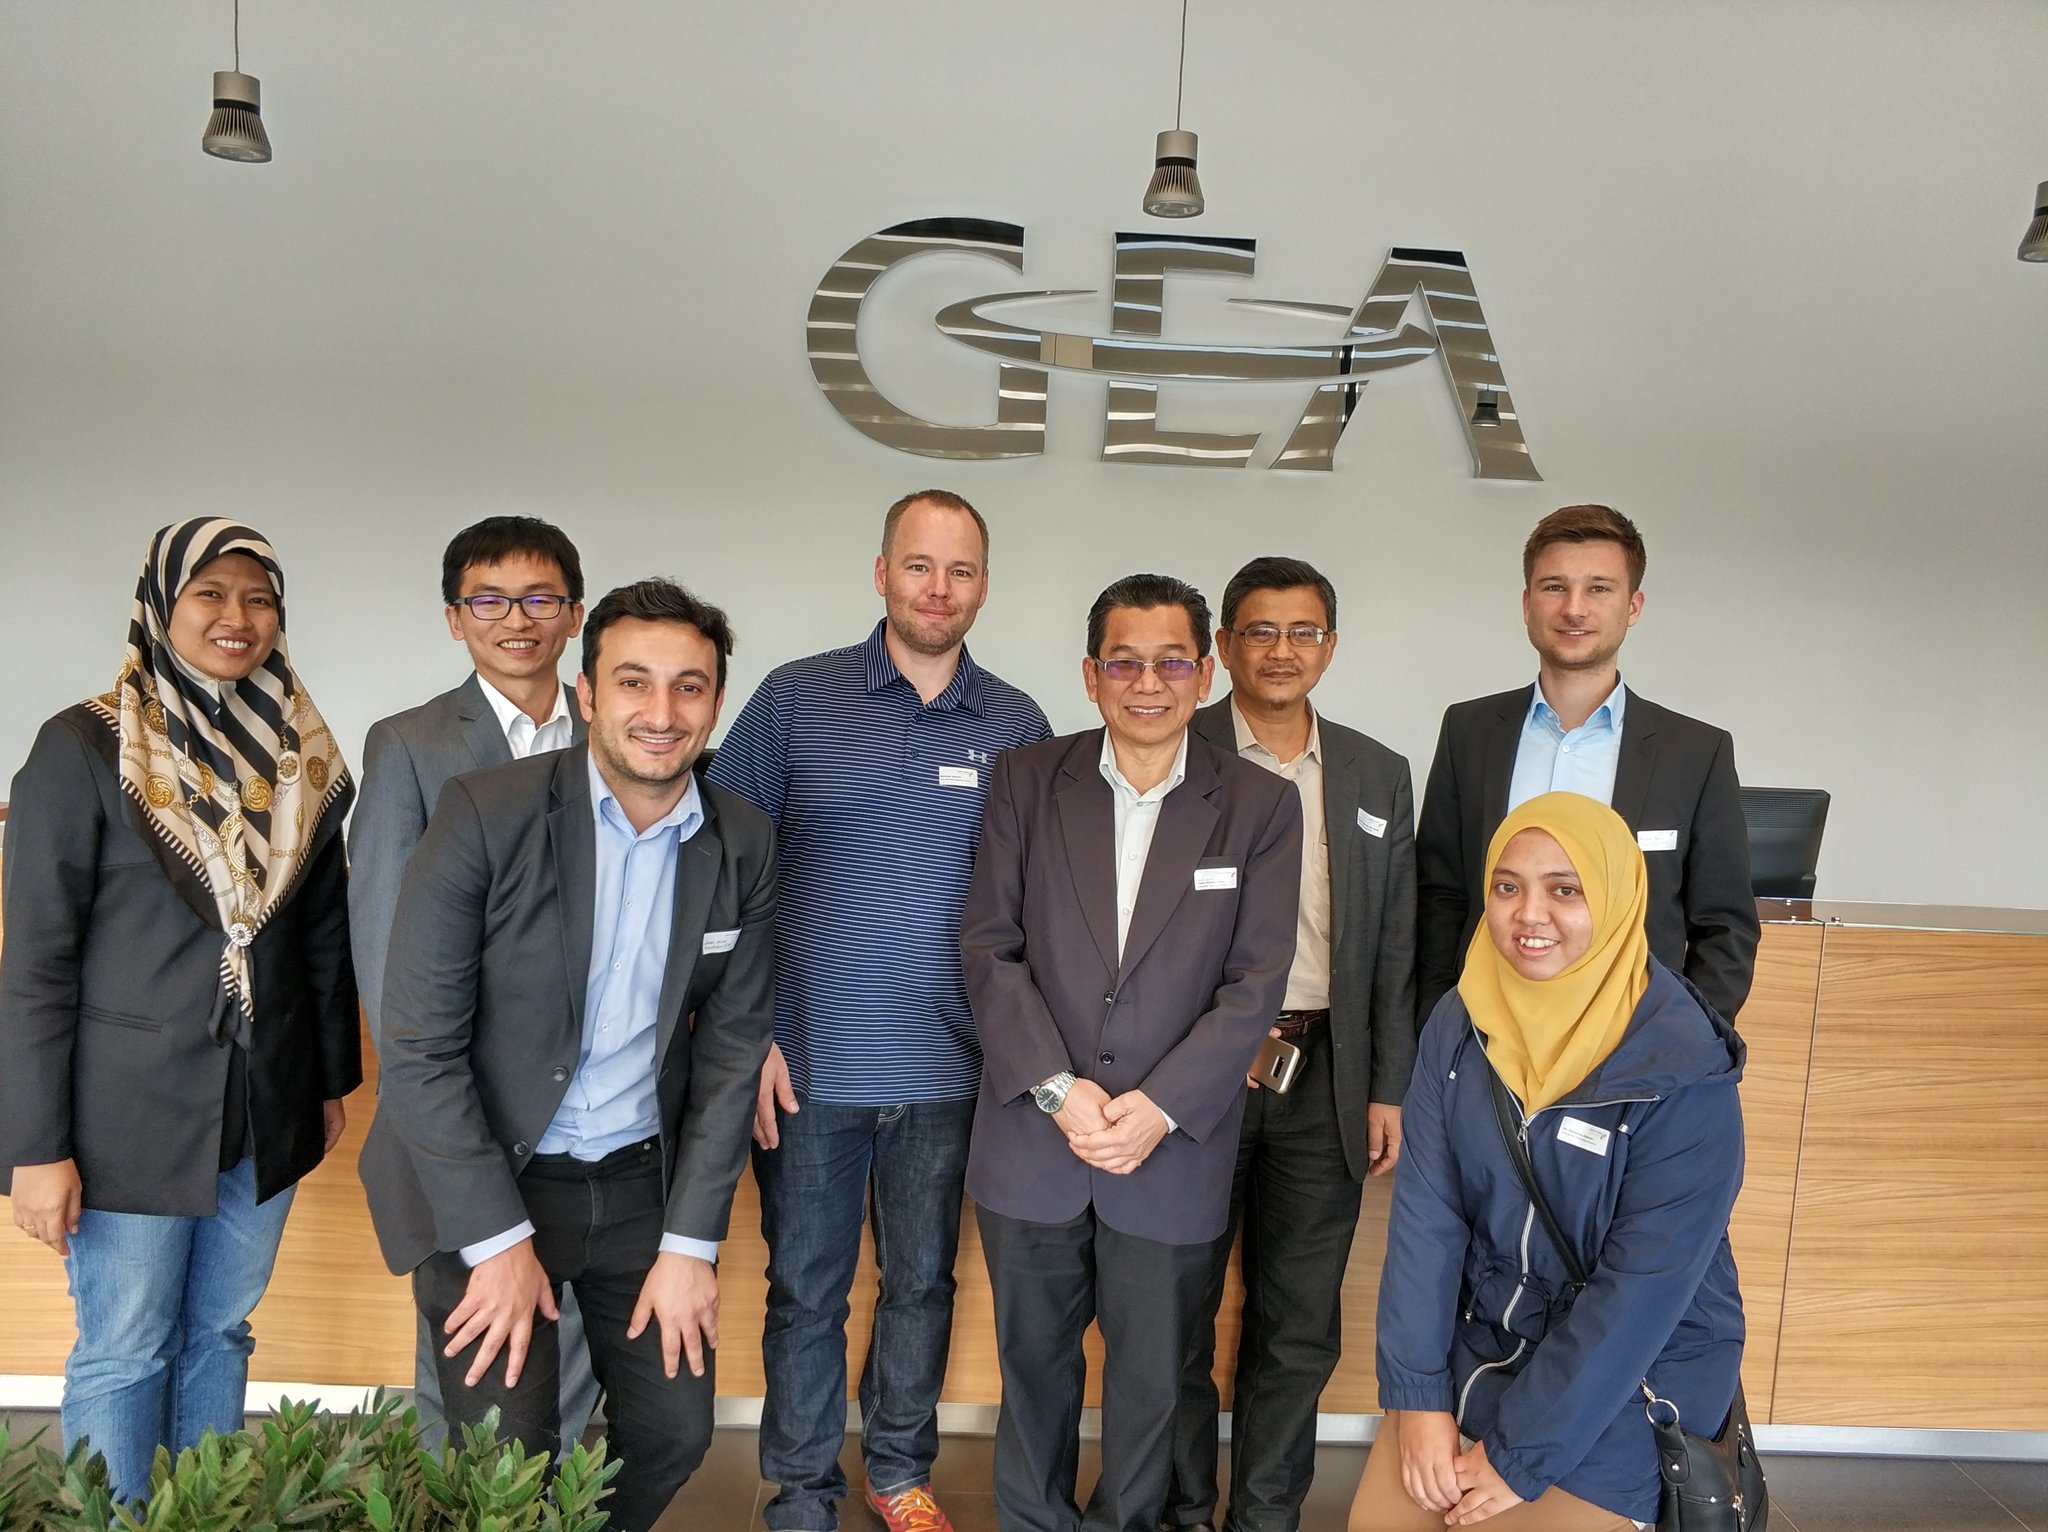 Am letzten Tag besuchten die Teilnehmerinnen und Teilnehmer die GEA Group und bekamen spannenden Einblicke in die Produktionsprozesse des Industriekonzerns.